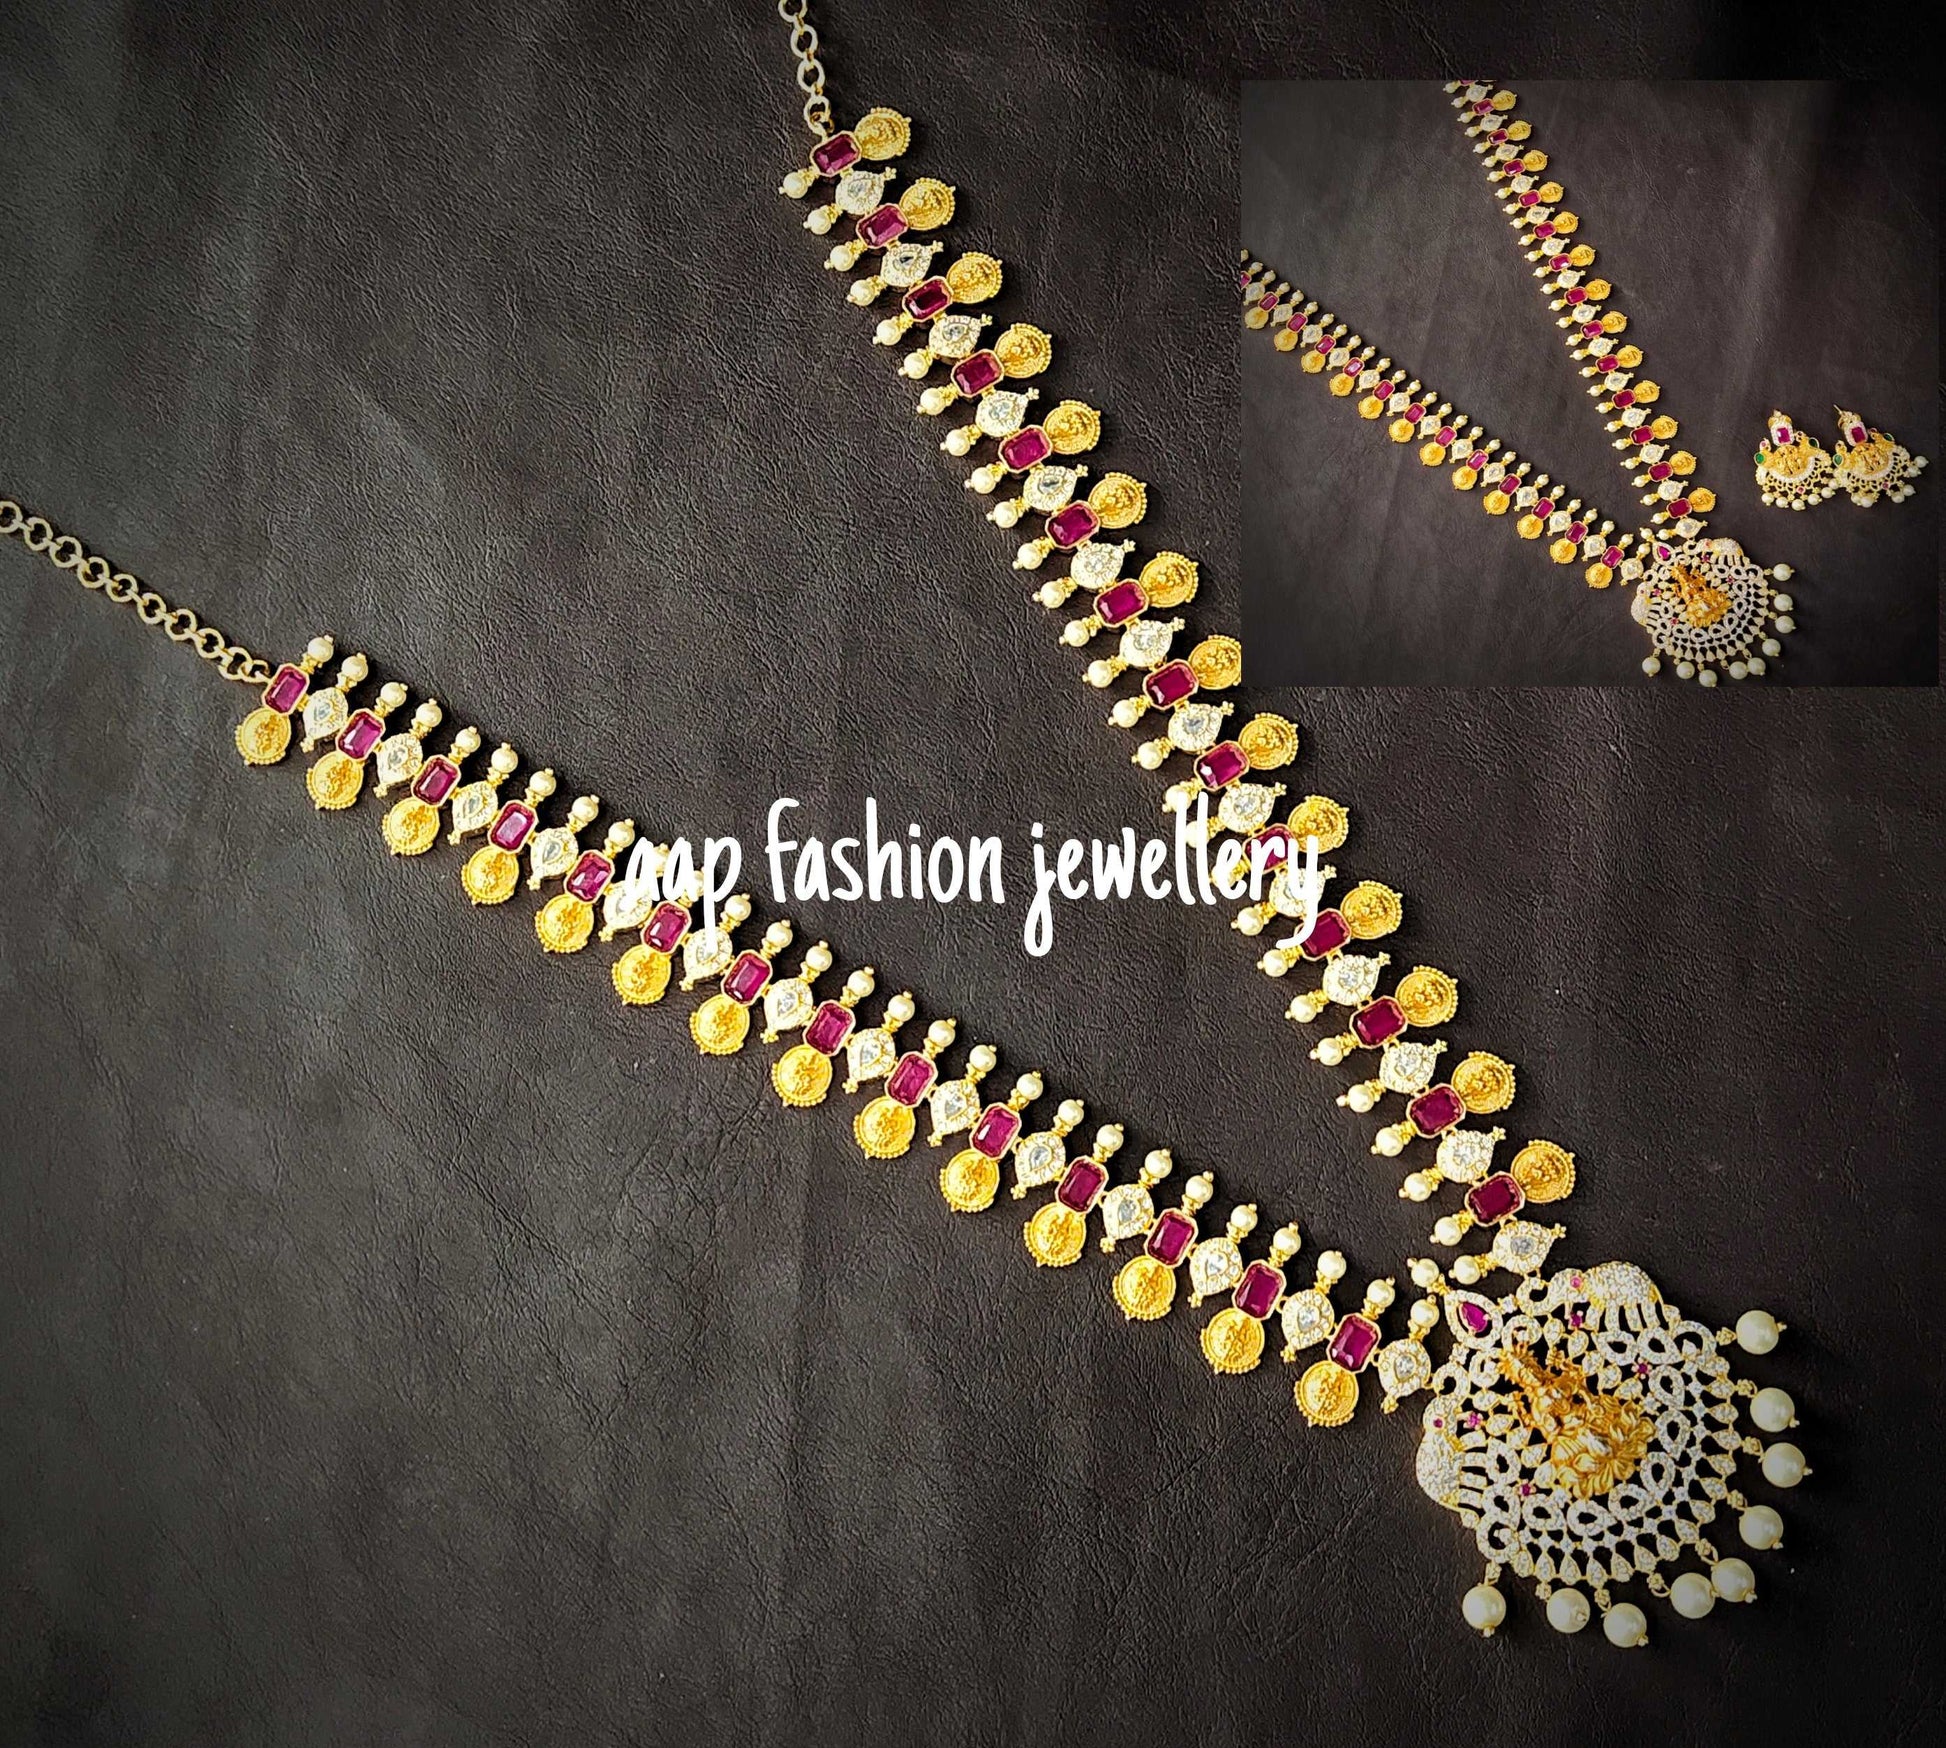 Gold Finish Goddess Laxmi Long Necklace Set